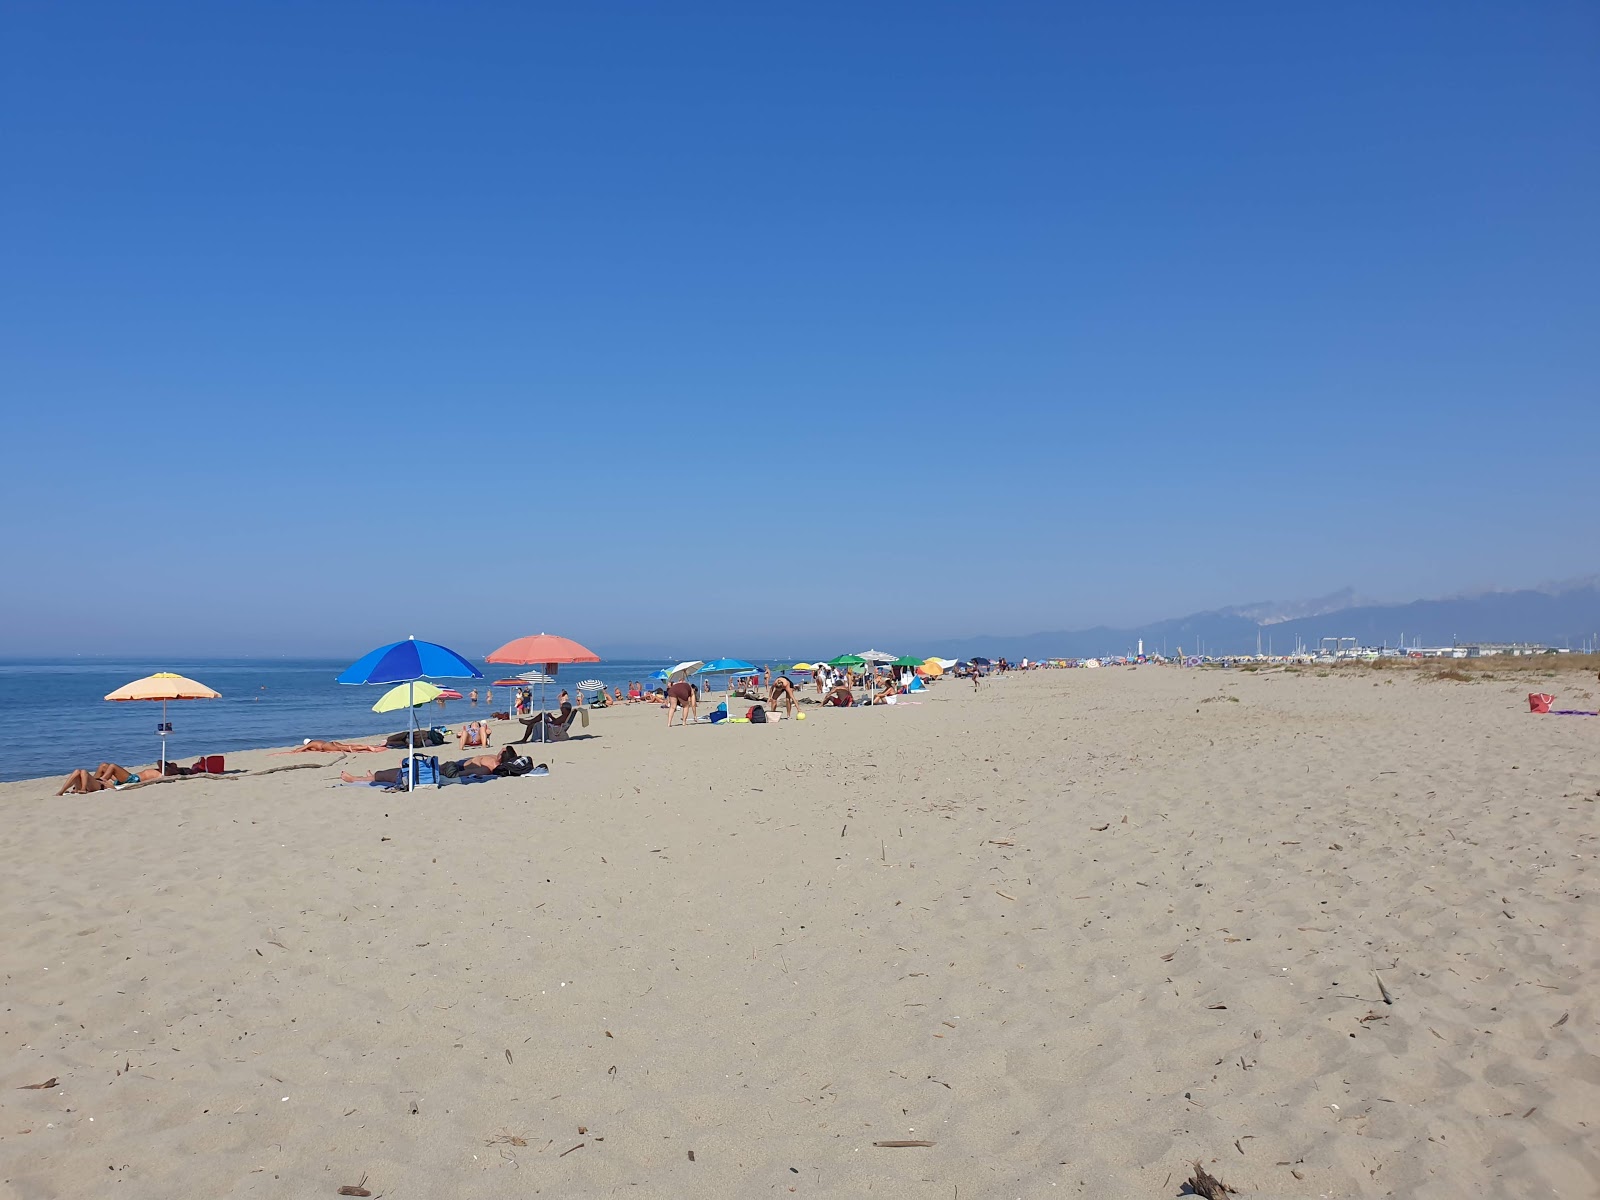 Foto af Spiaggia della Lecciona - populært sted blandt afslapningskendere